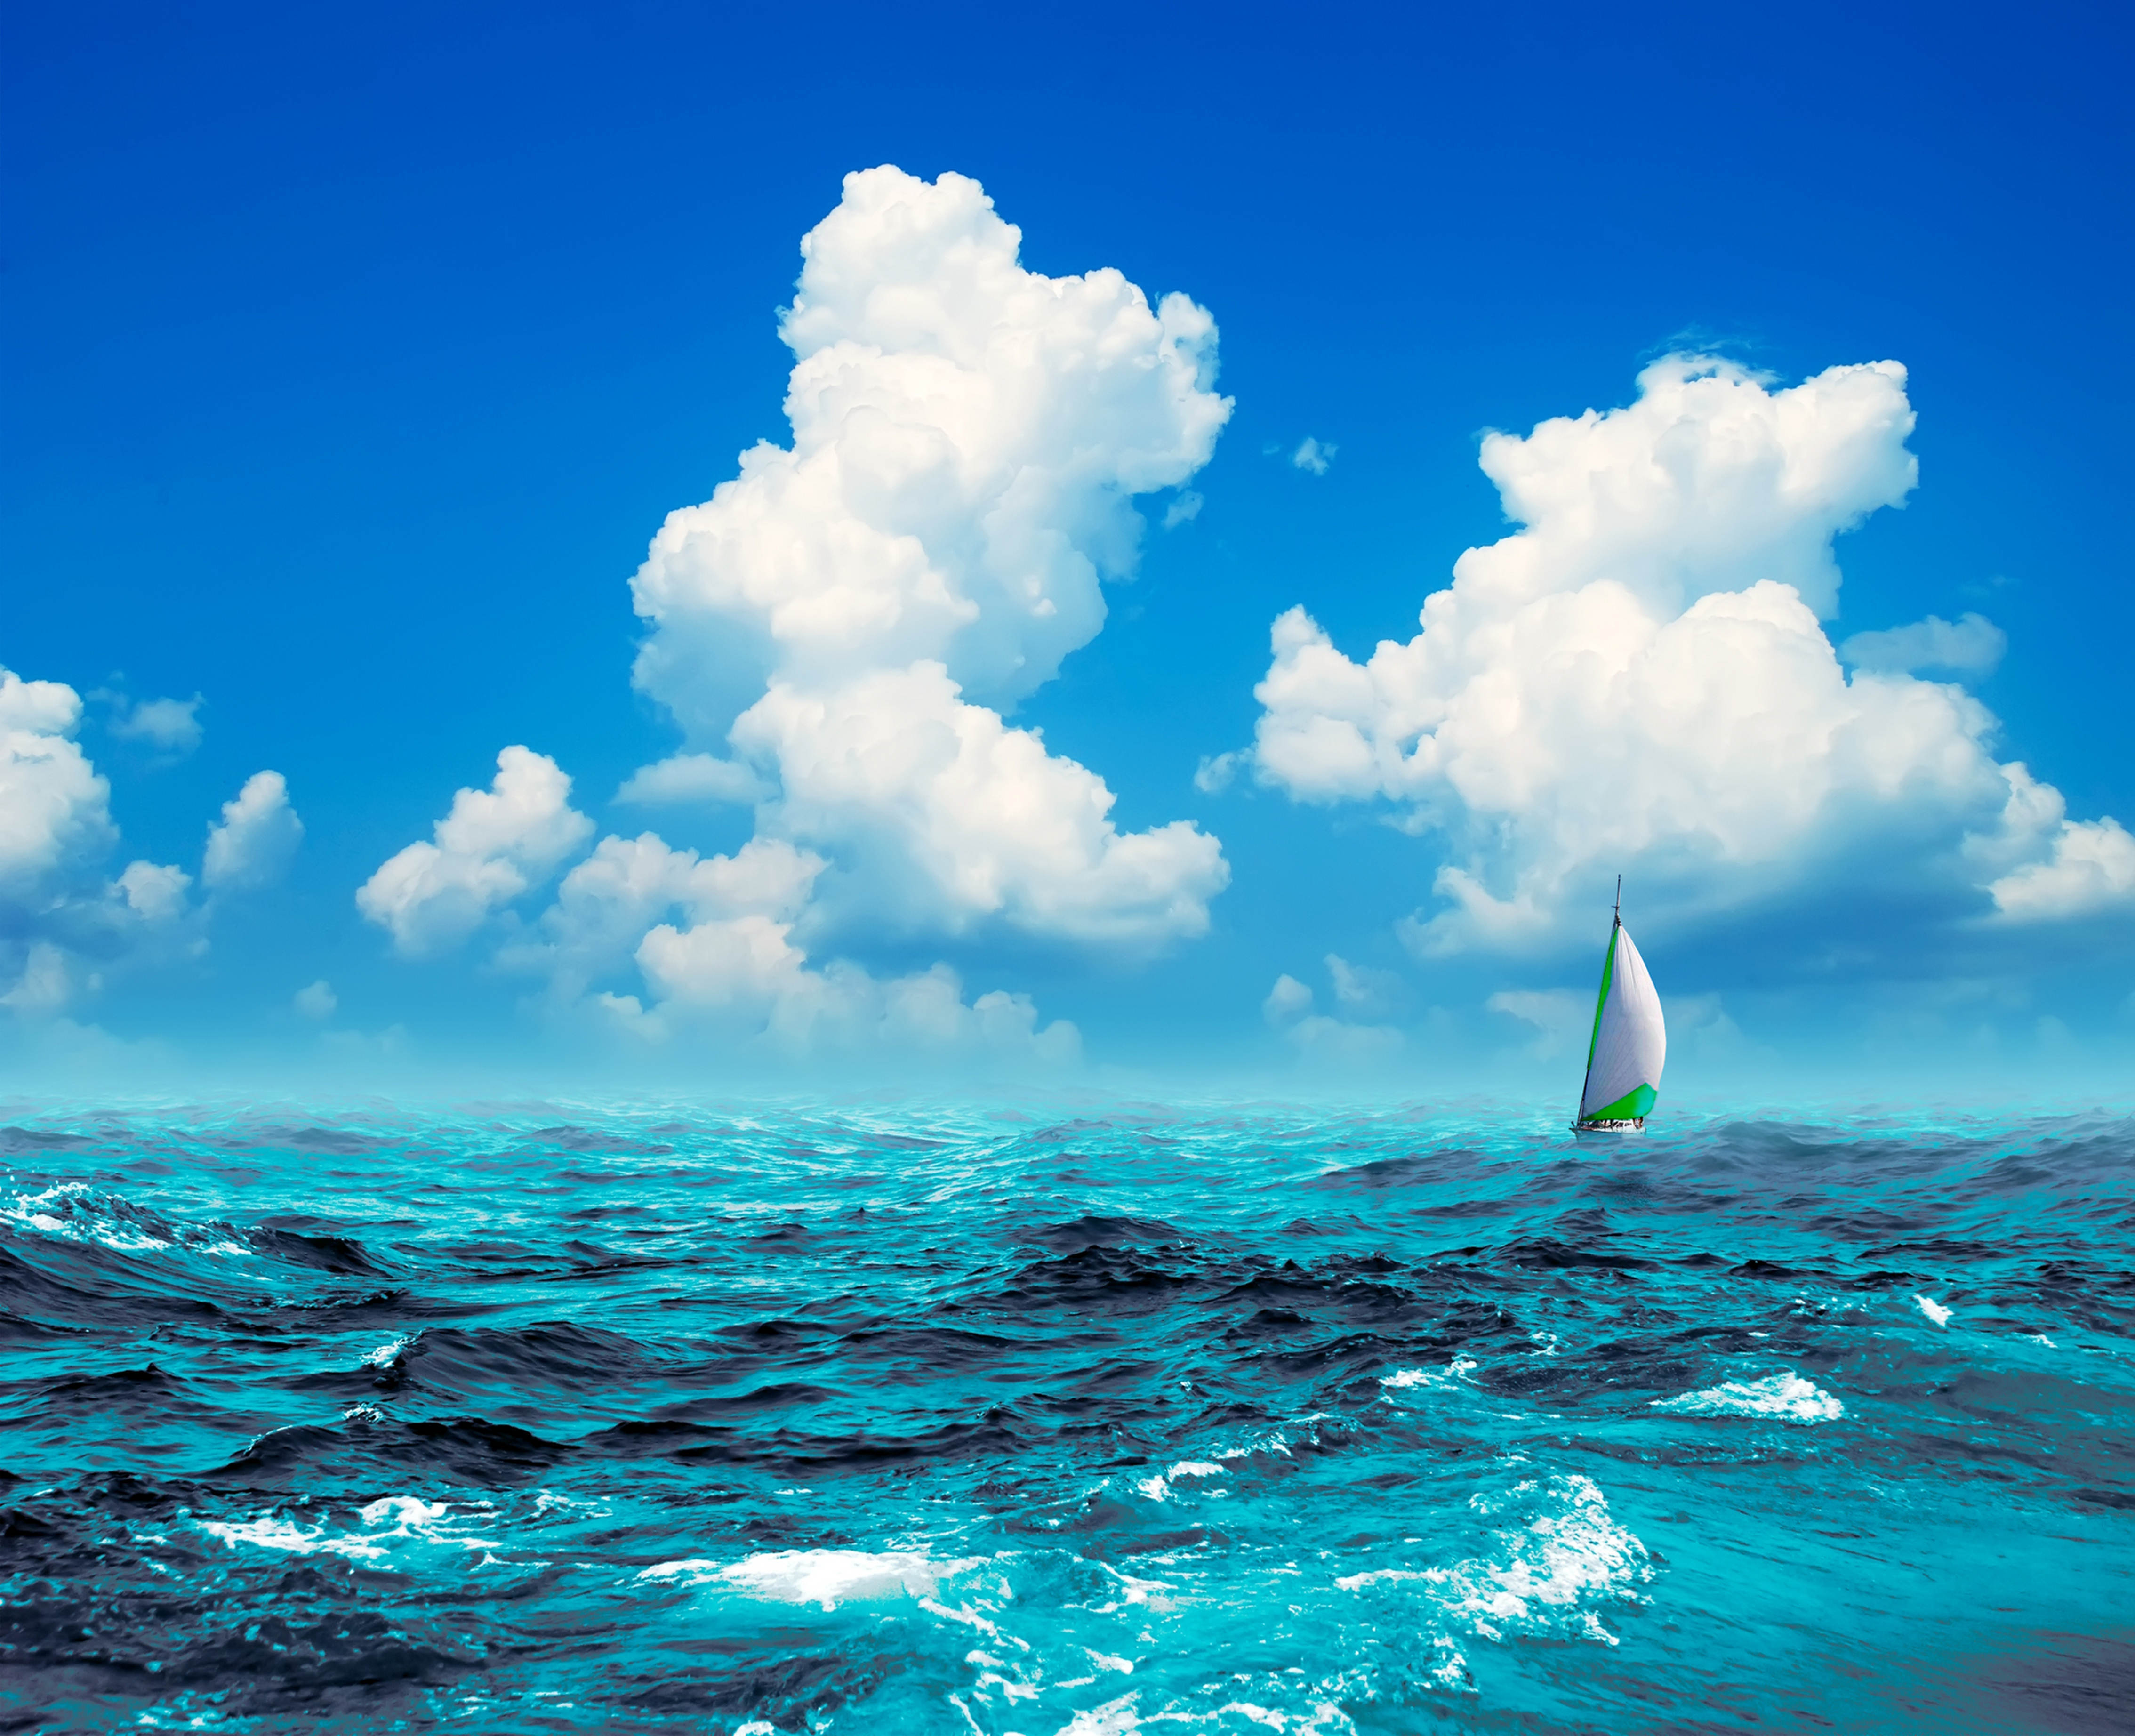 Image: Sky, blue, clouds, sea, ocean, waves, sail, boat